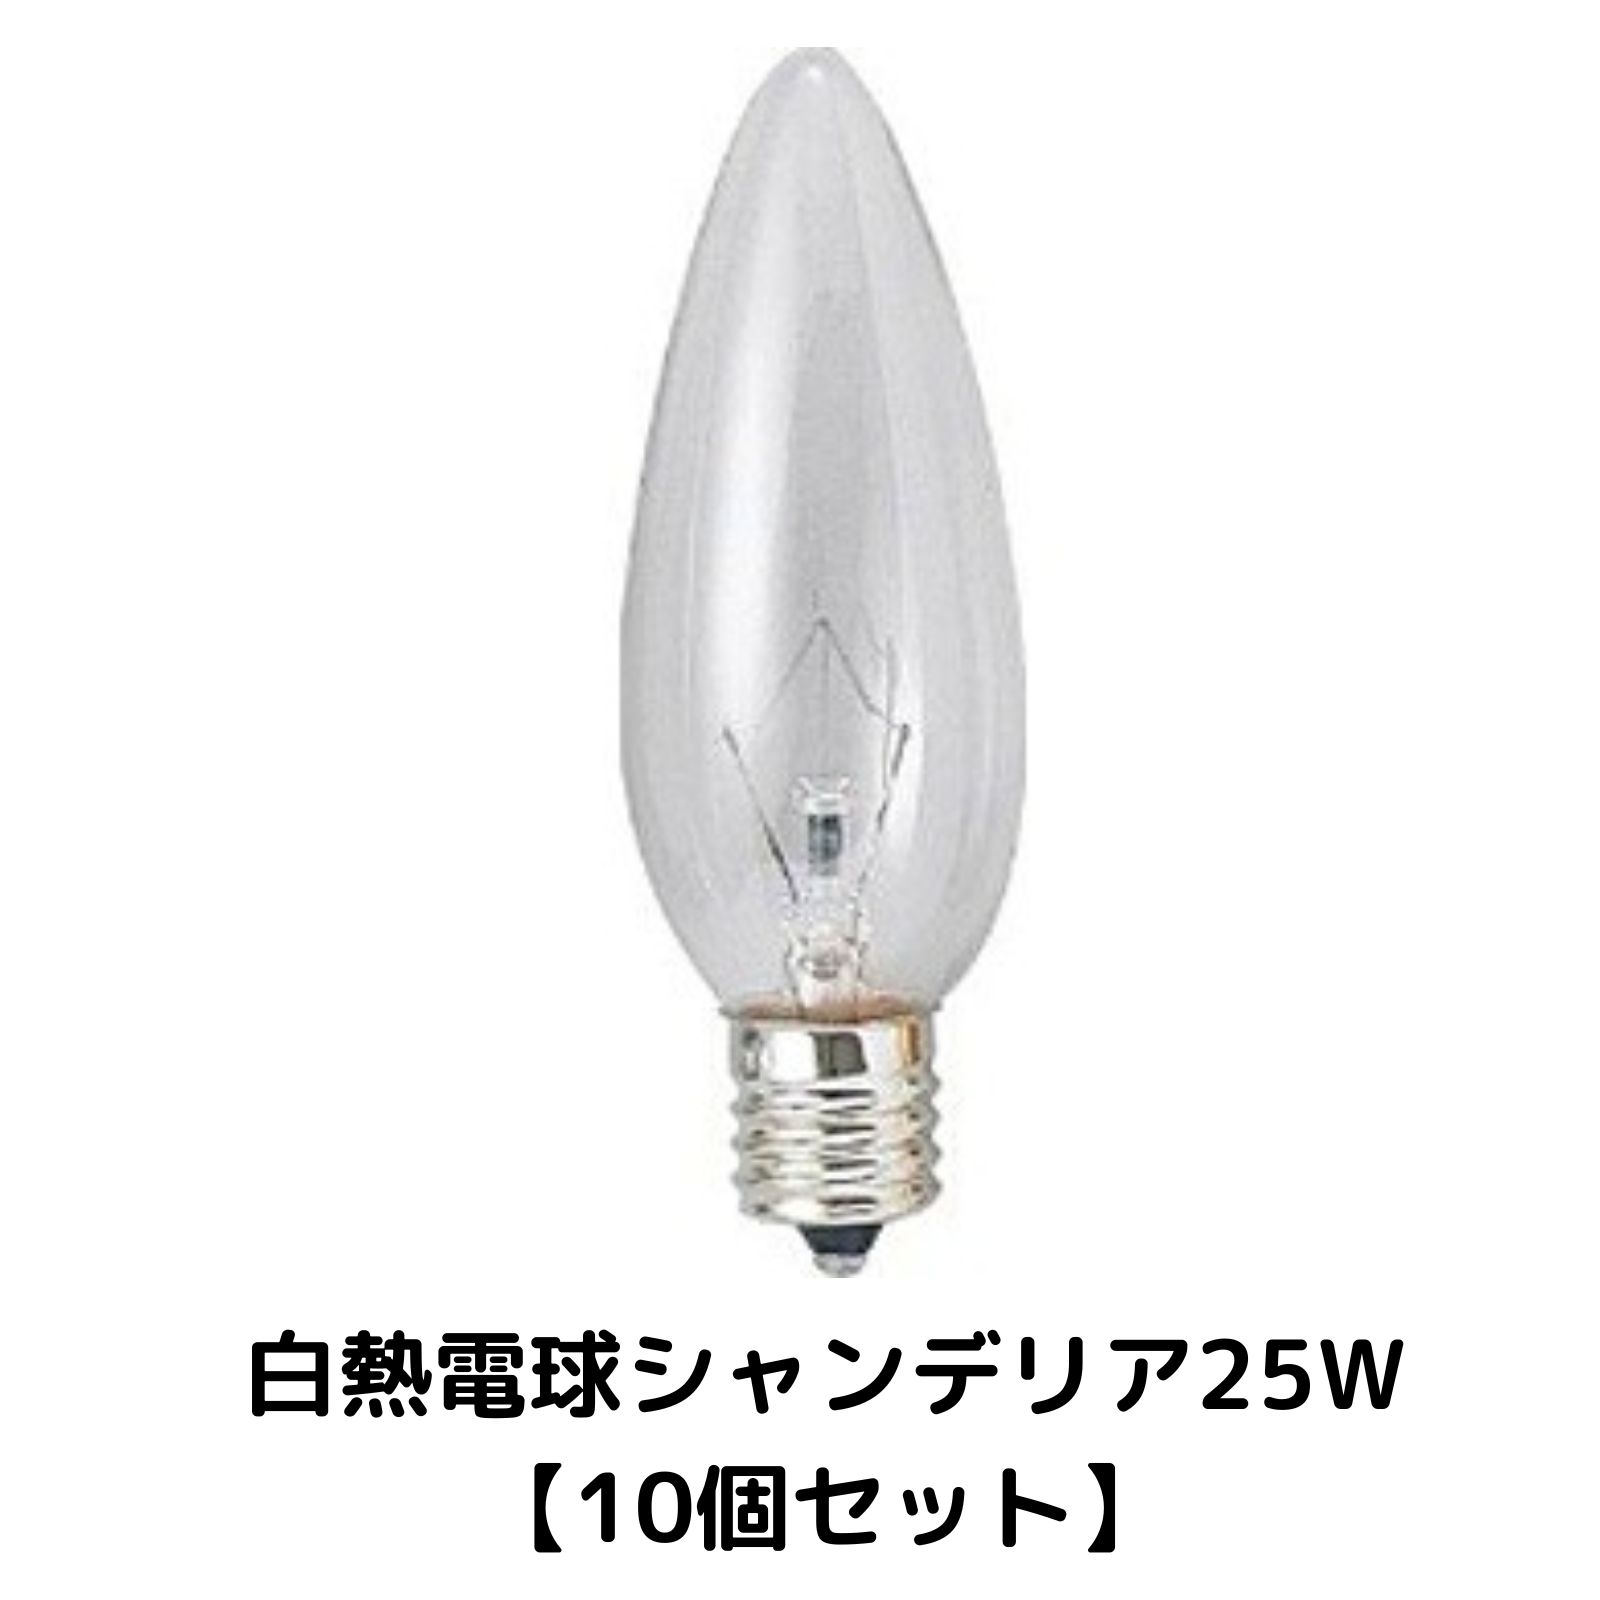 【10個セット】 白熱電球 シャンデ